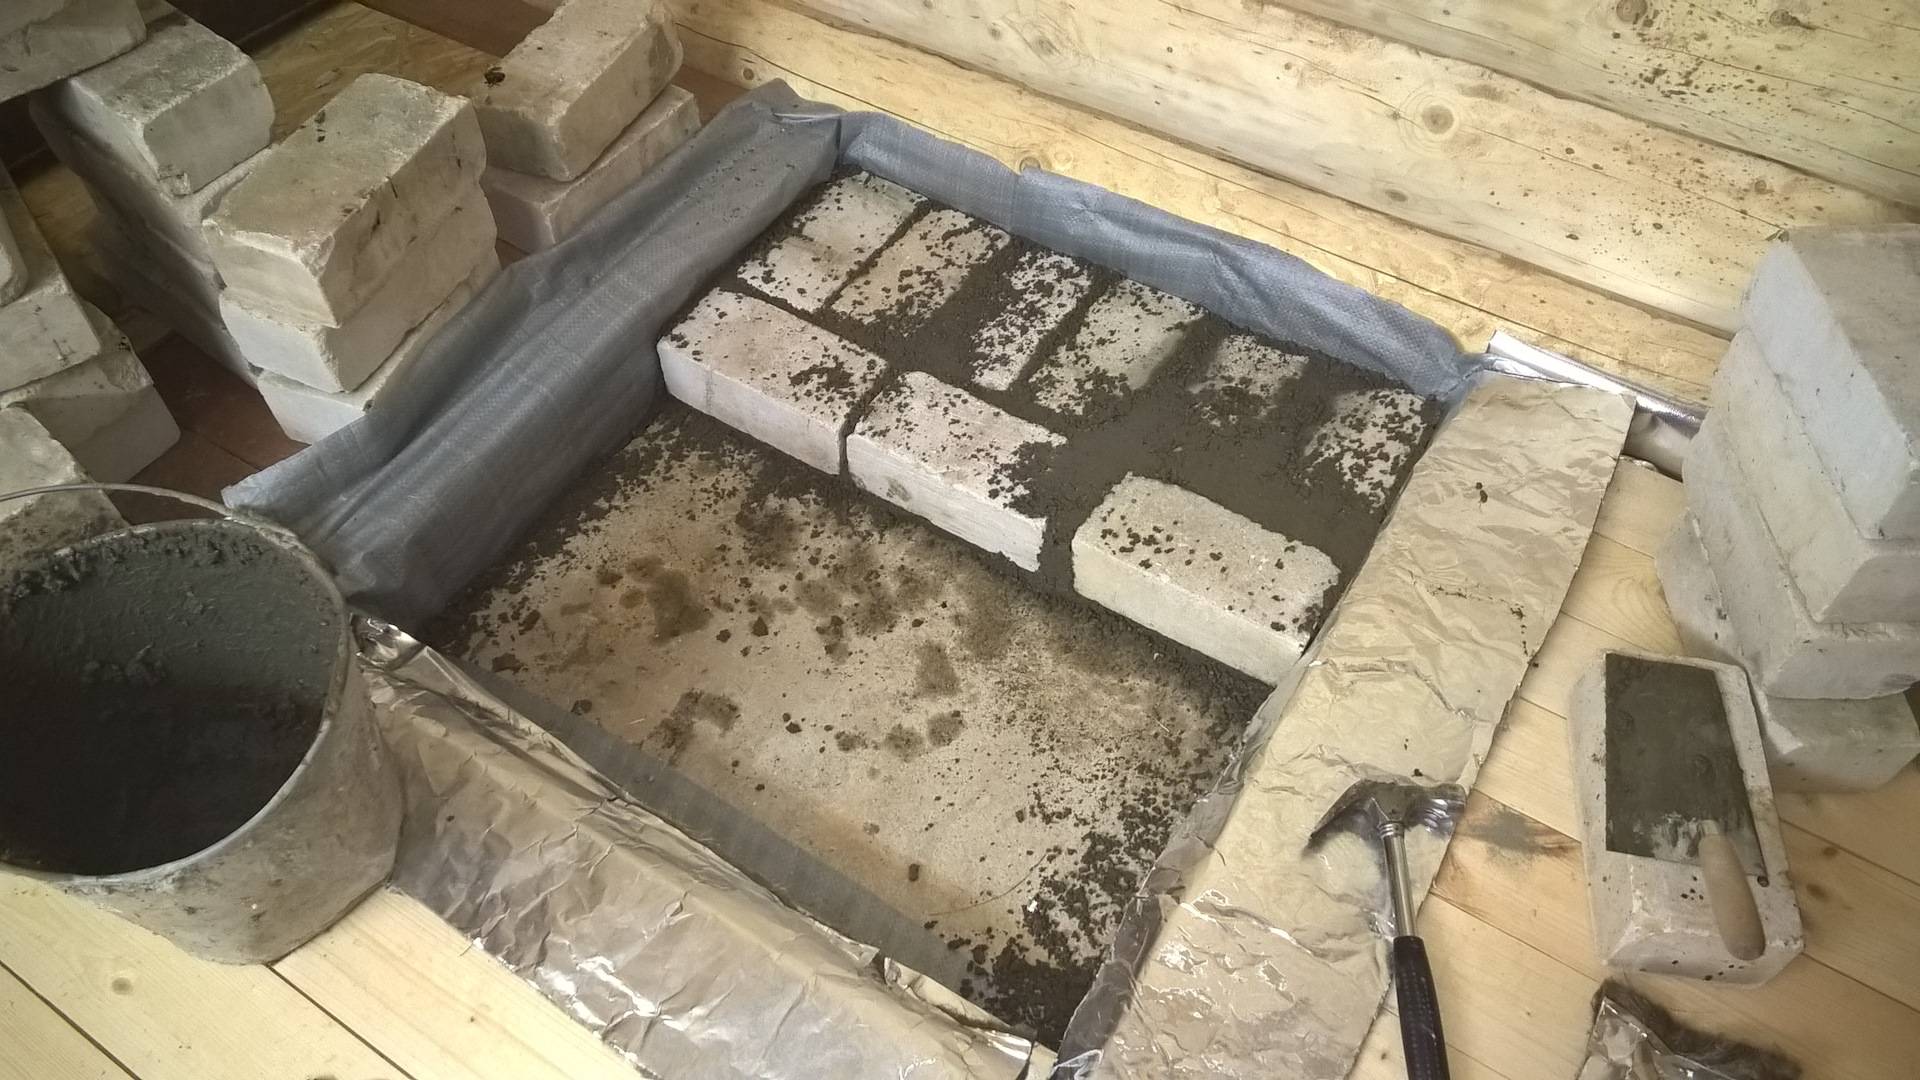 Как сделать фундамент под тяжелую кирпичную печь: пошаговая инструкция